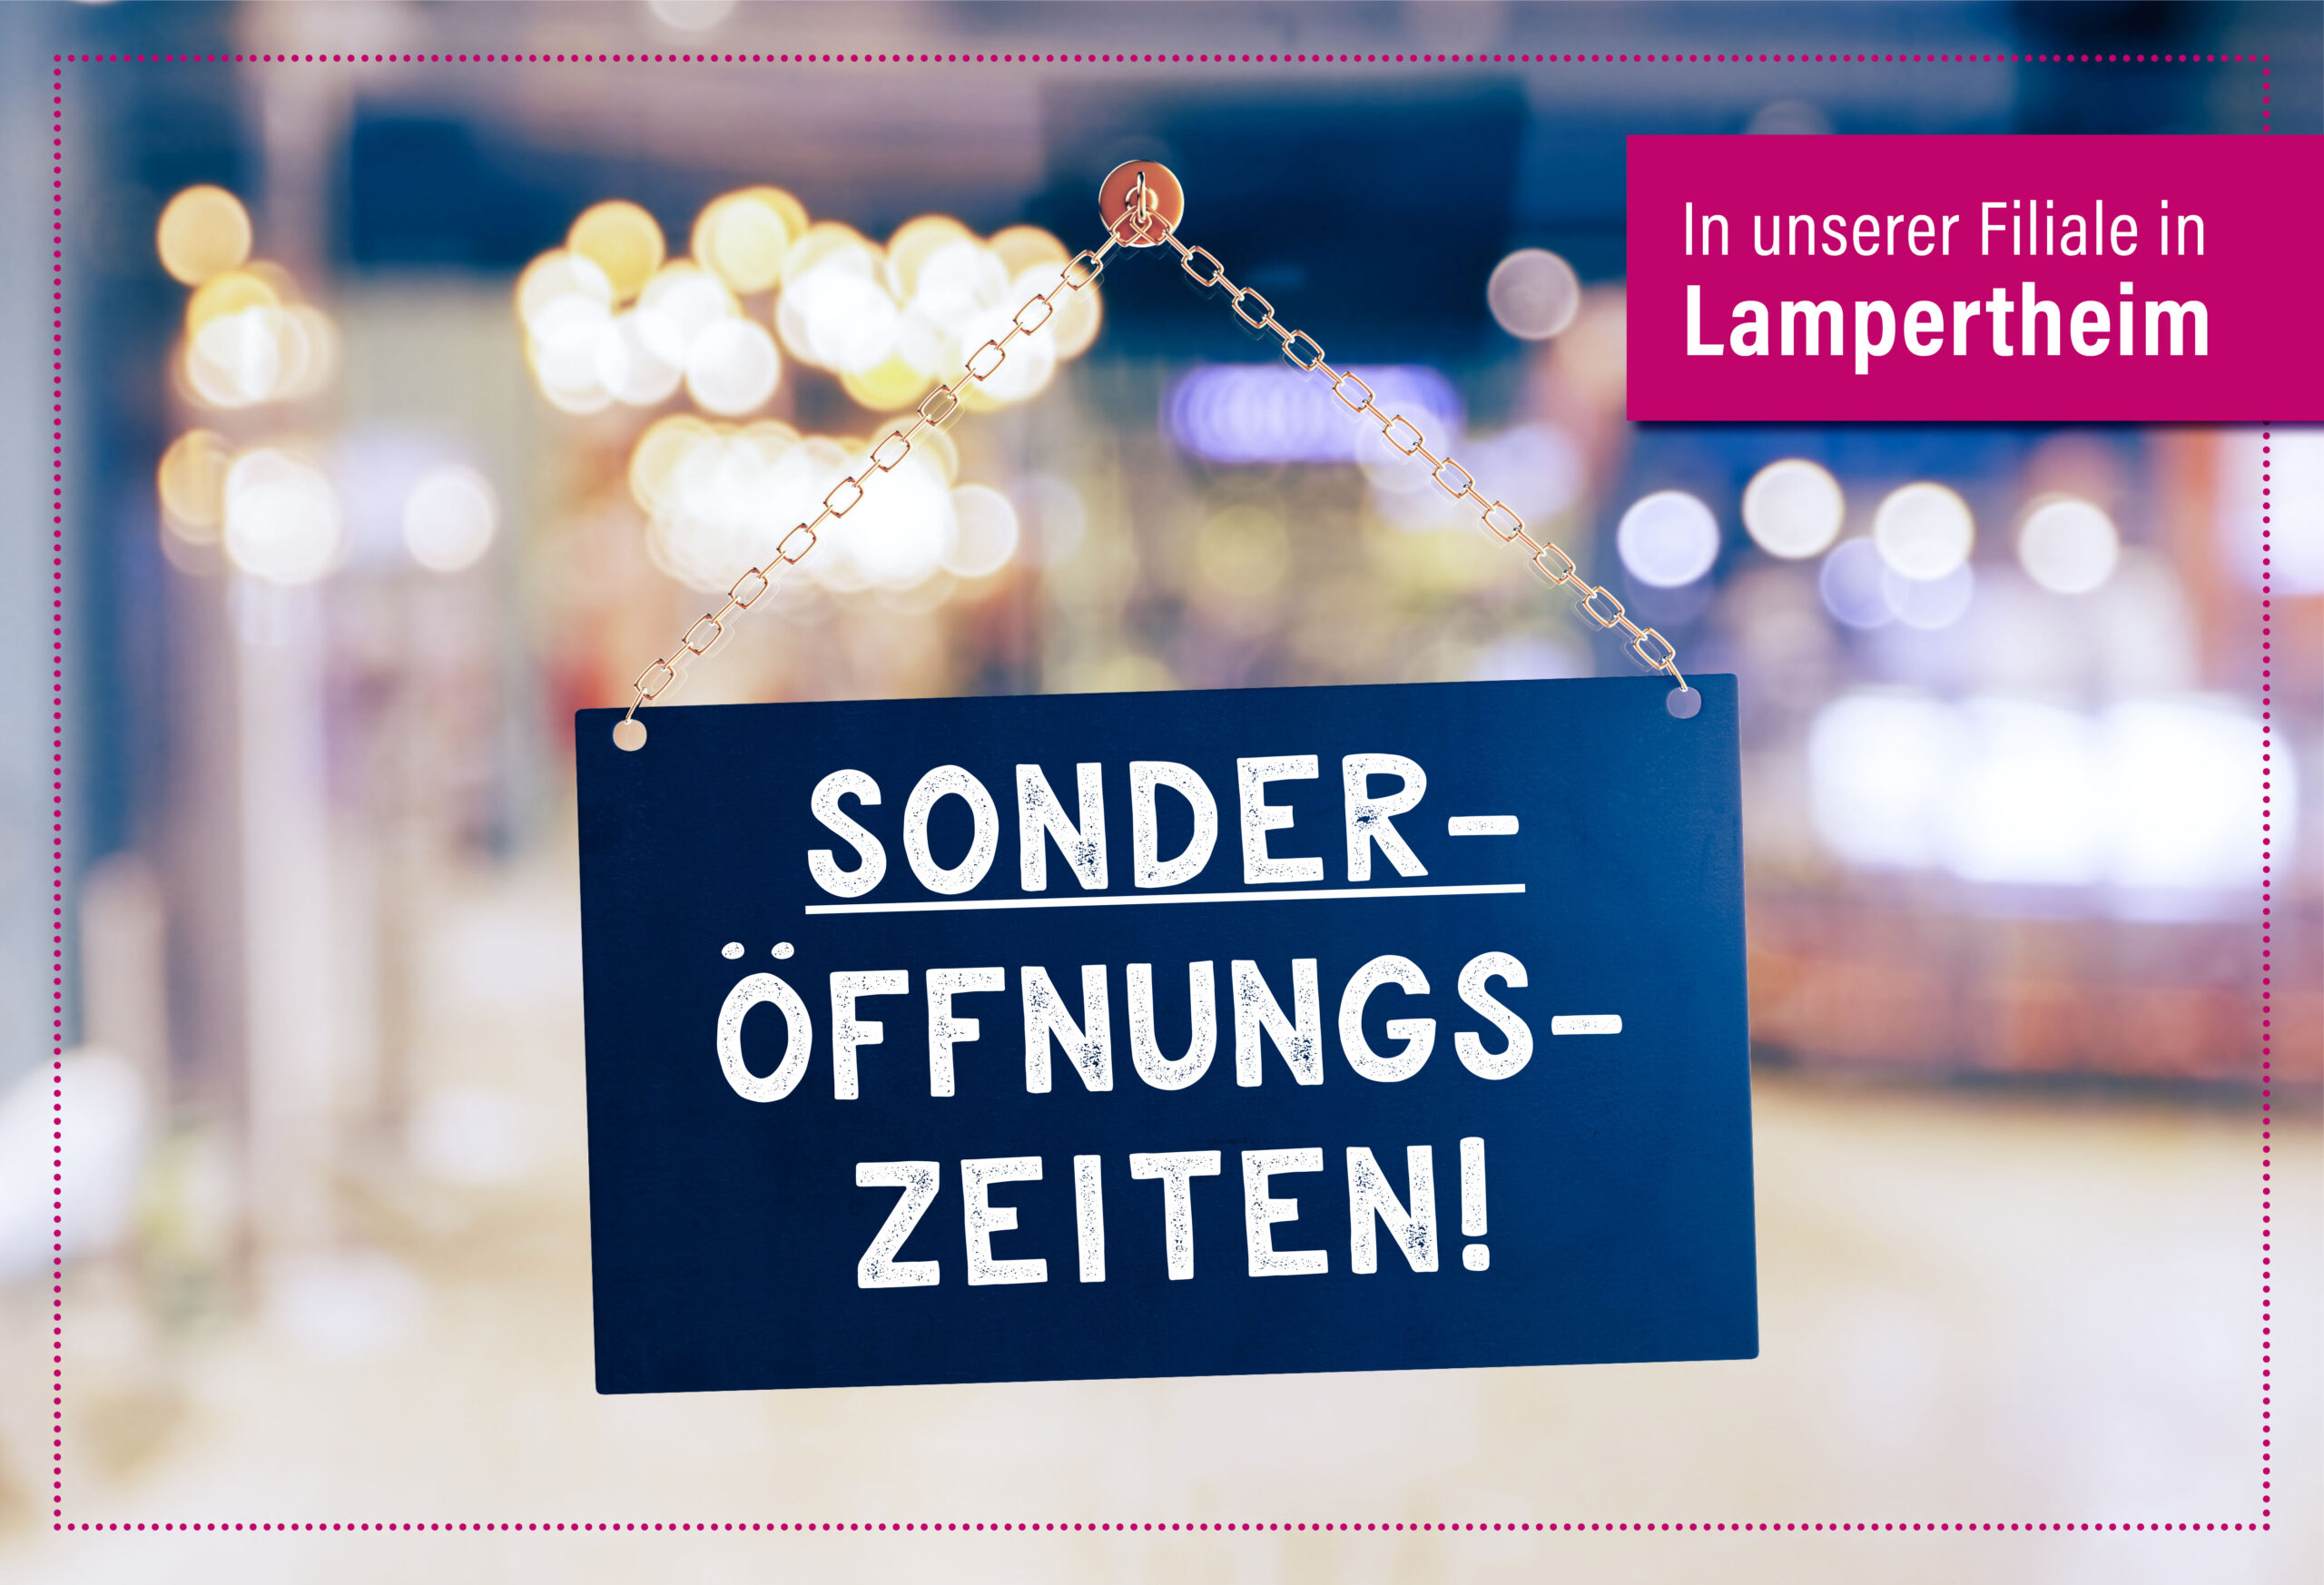 Schild an Ladentür mit Text: Sonderöffnungzeiten in der Filliale in Lampertheim.